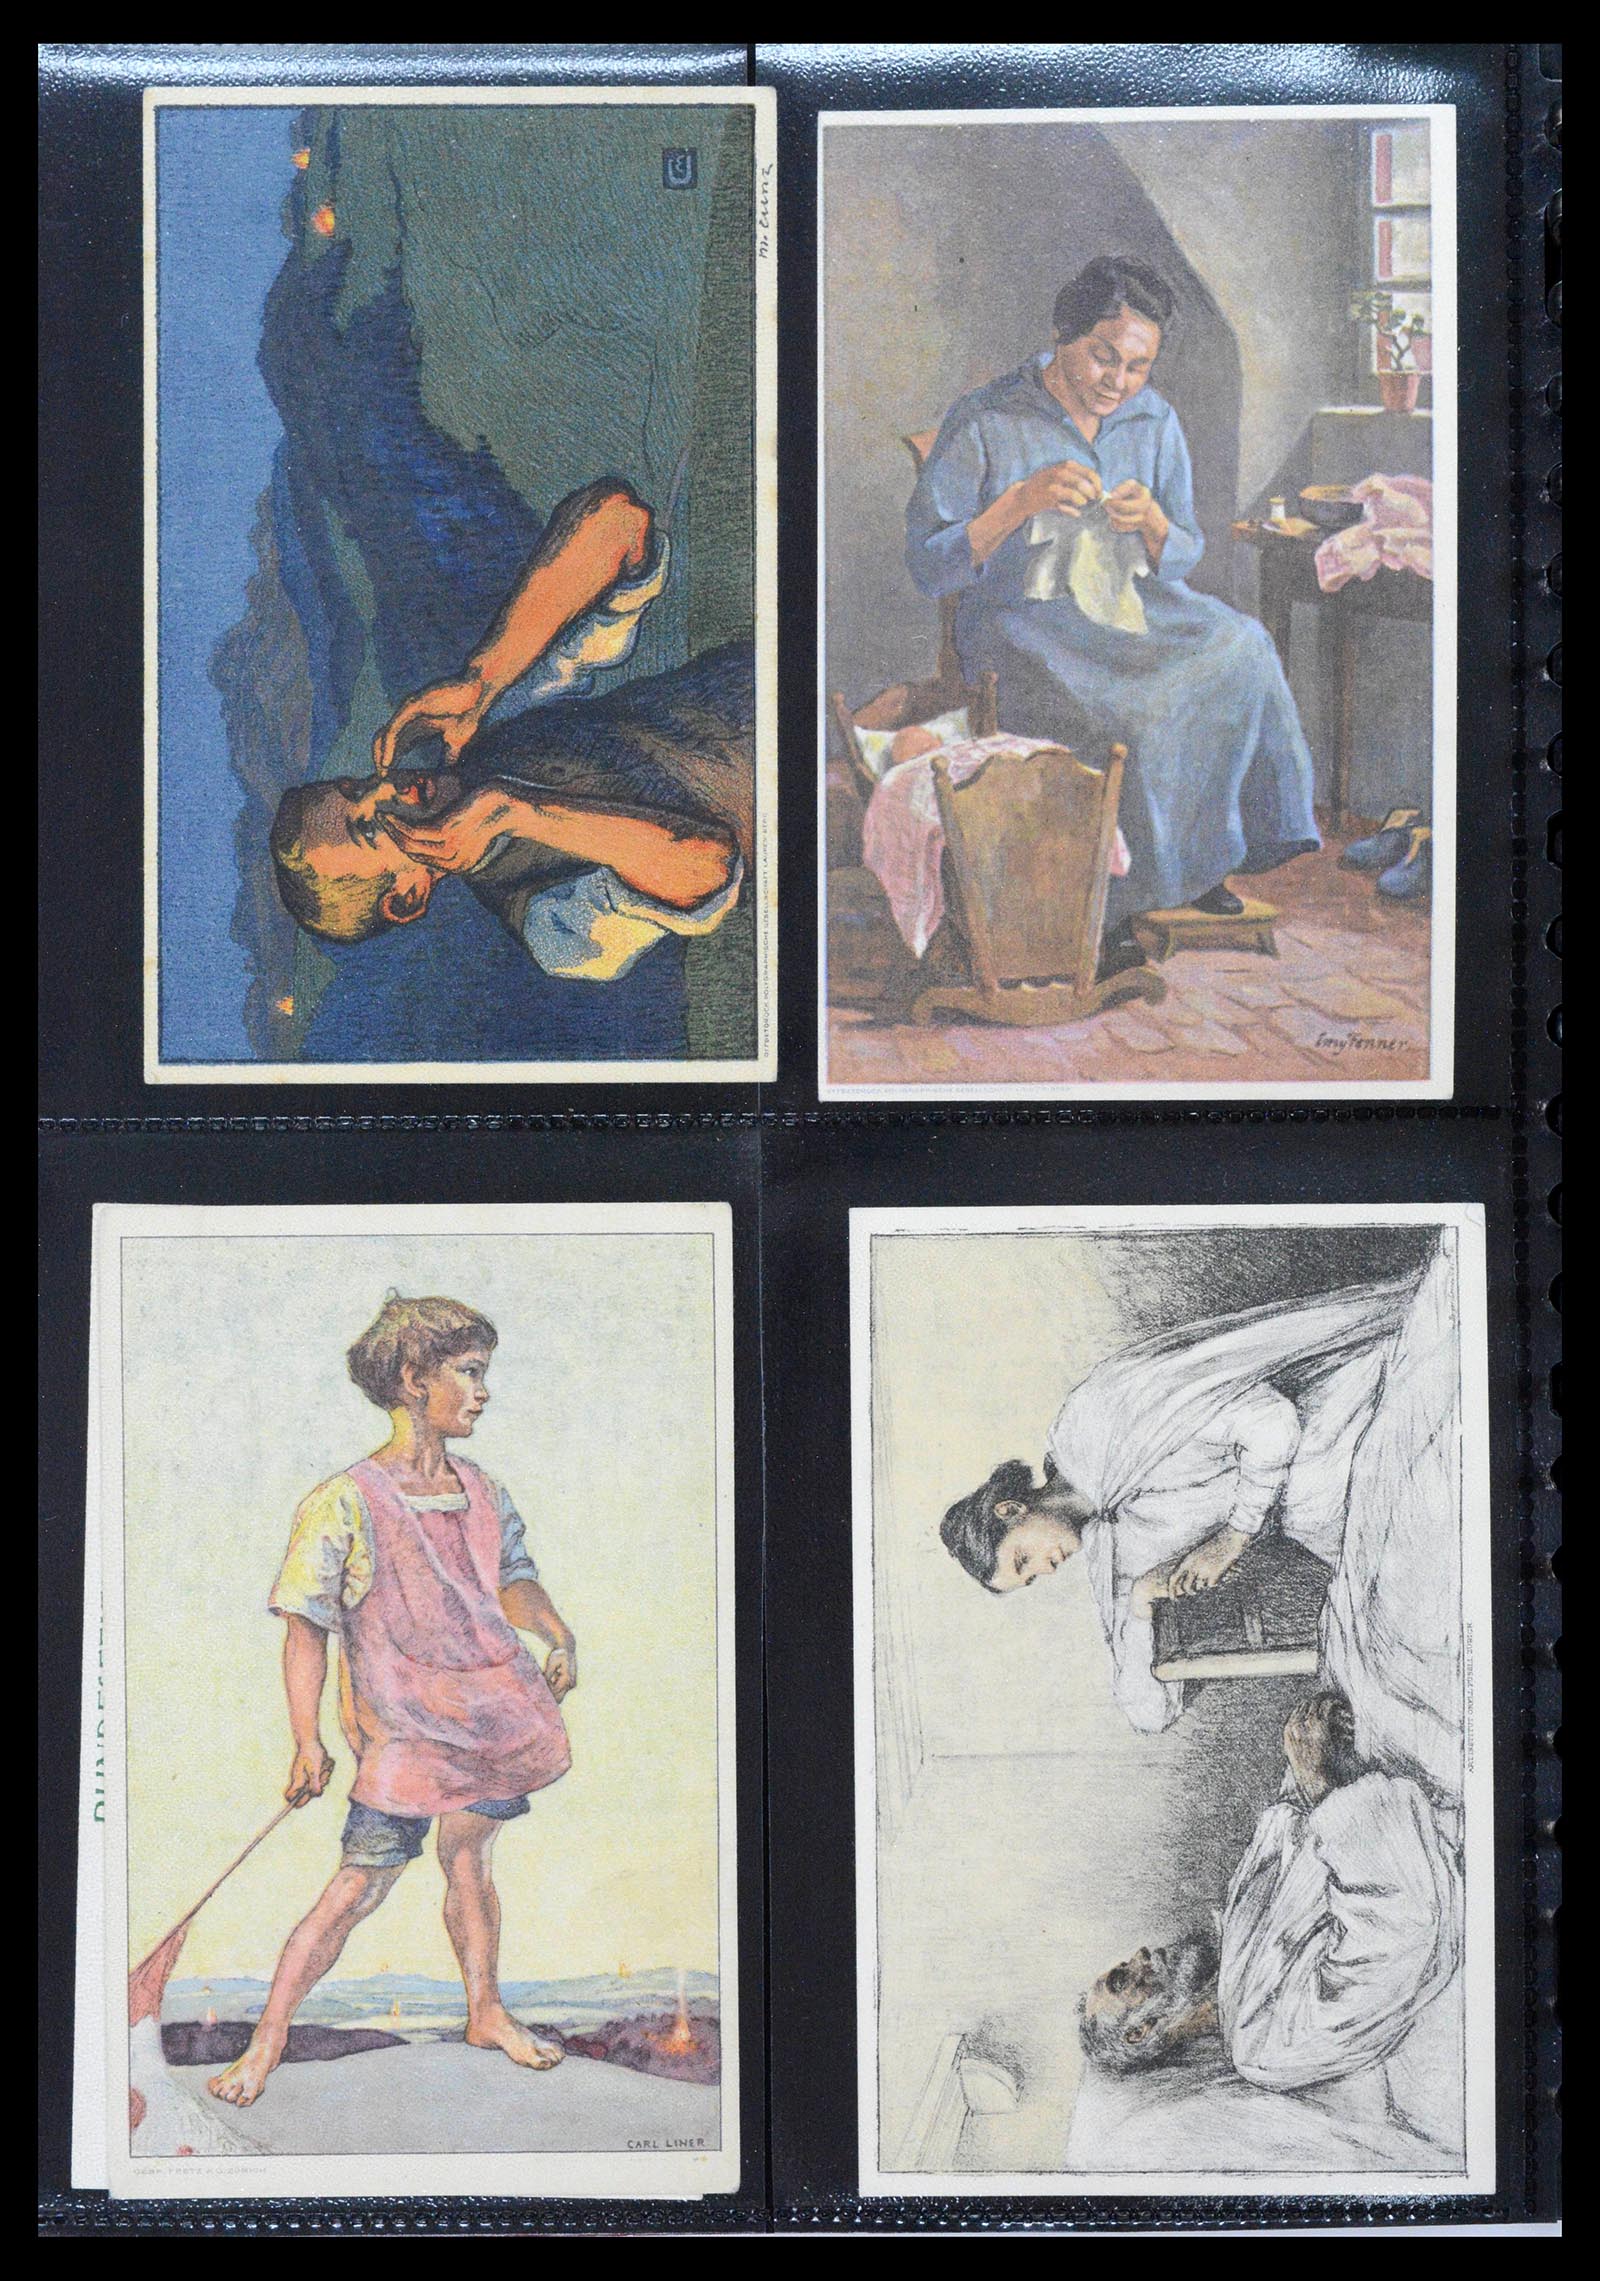 39433 0012 - Stamp collection 39433 Switzerland Bundesfeier cards 1910-1937.